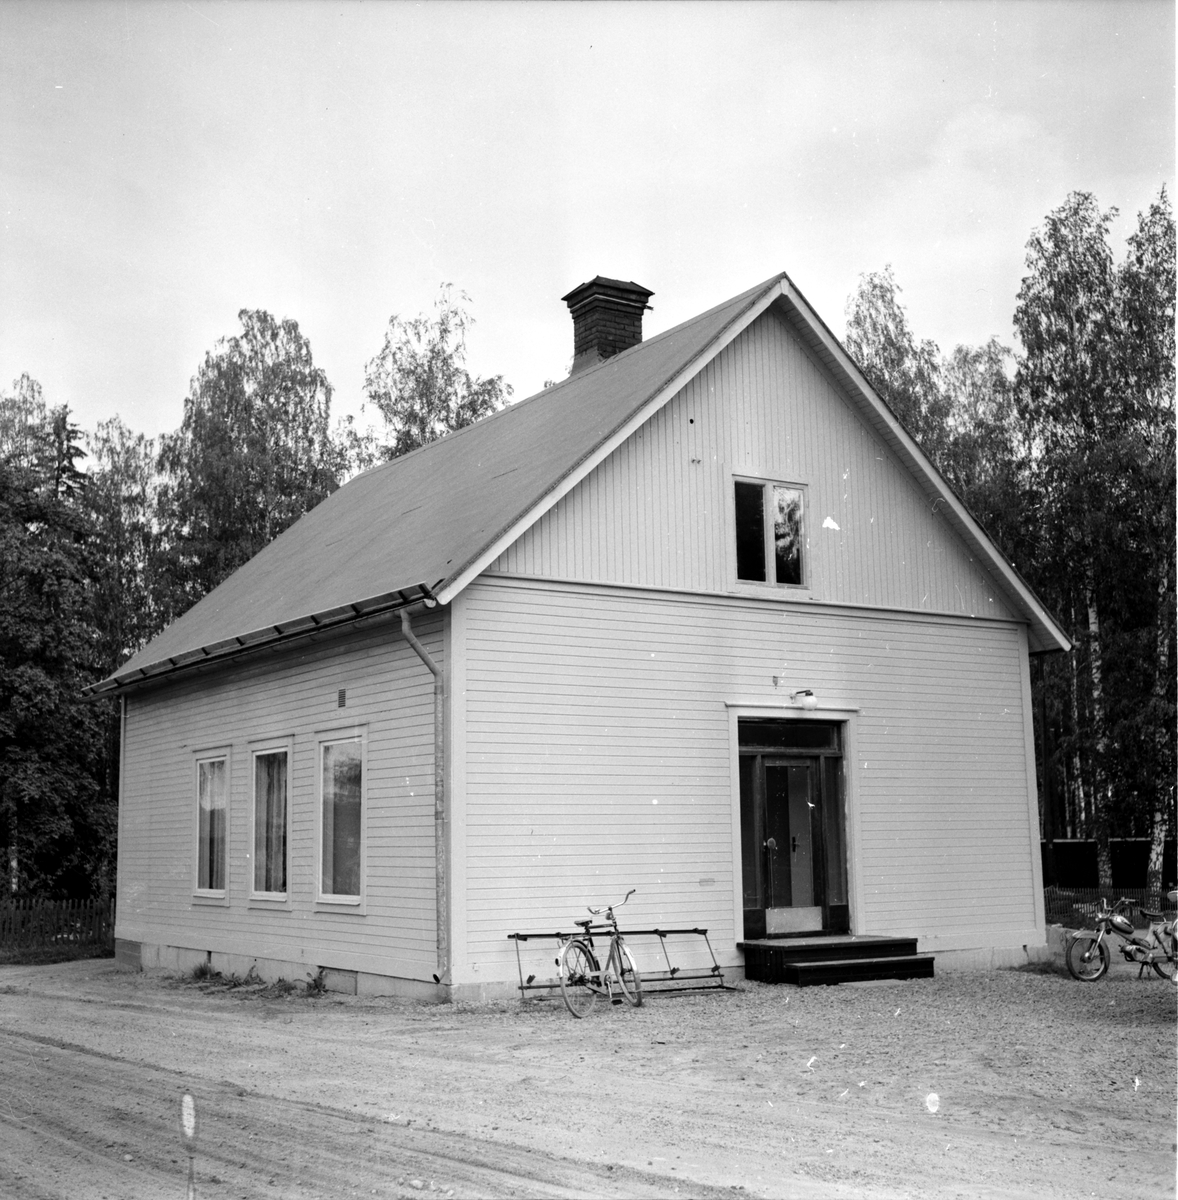 Granbergsgården,
28 Augusti 1964